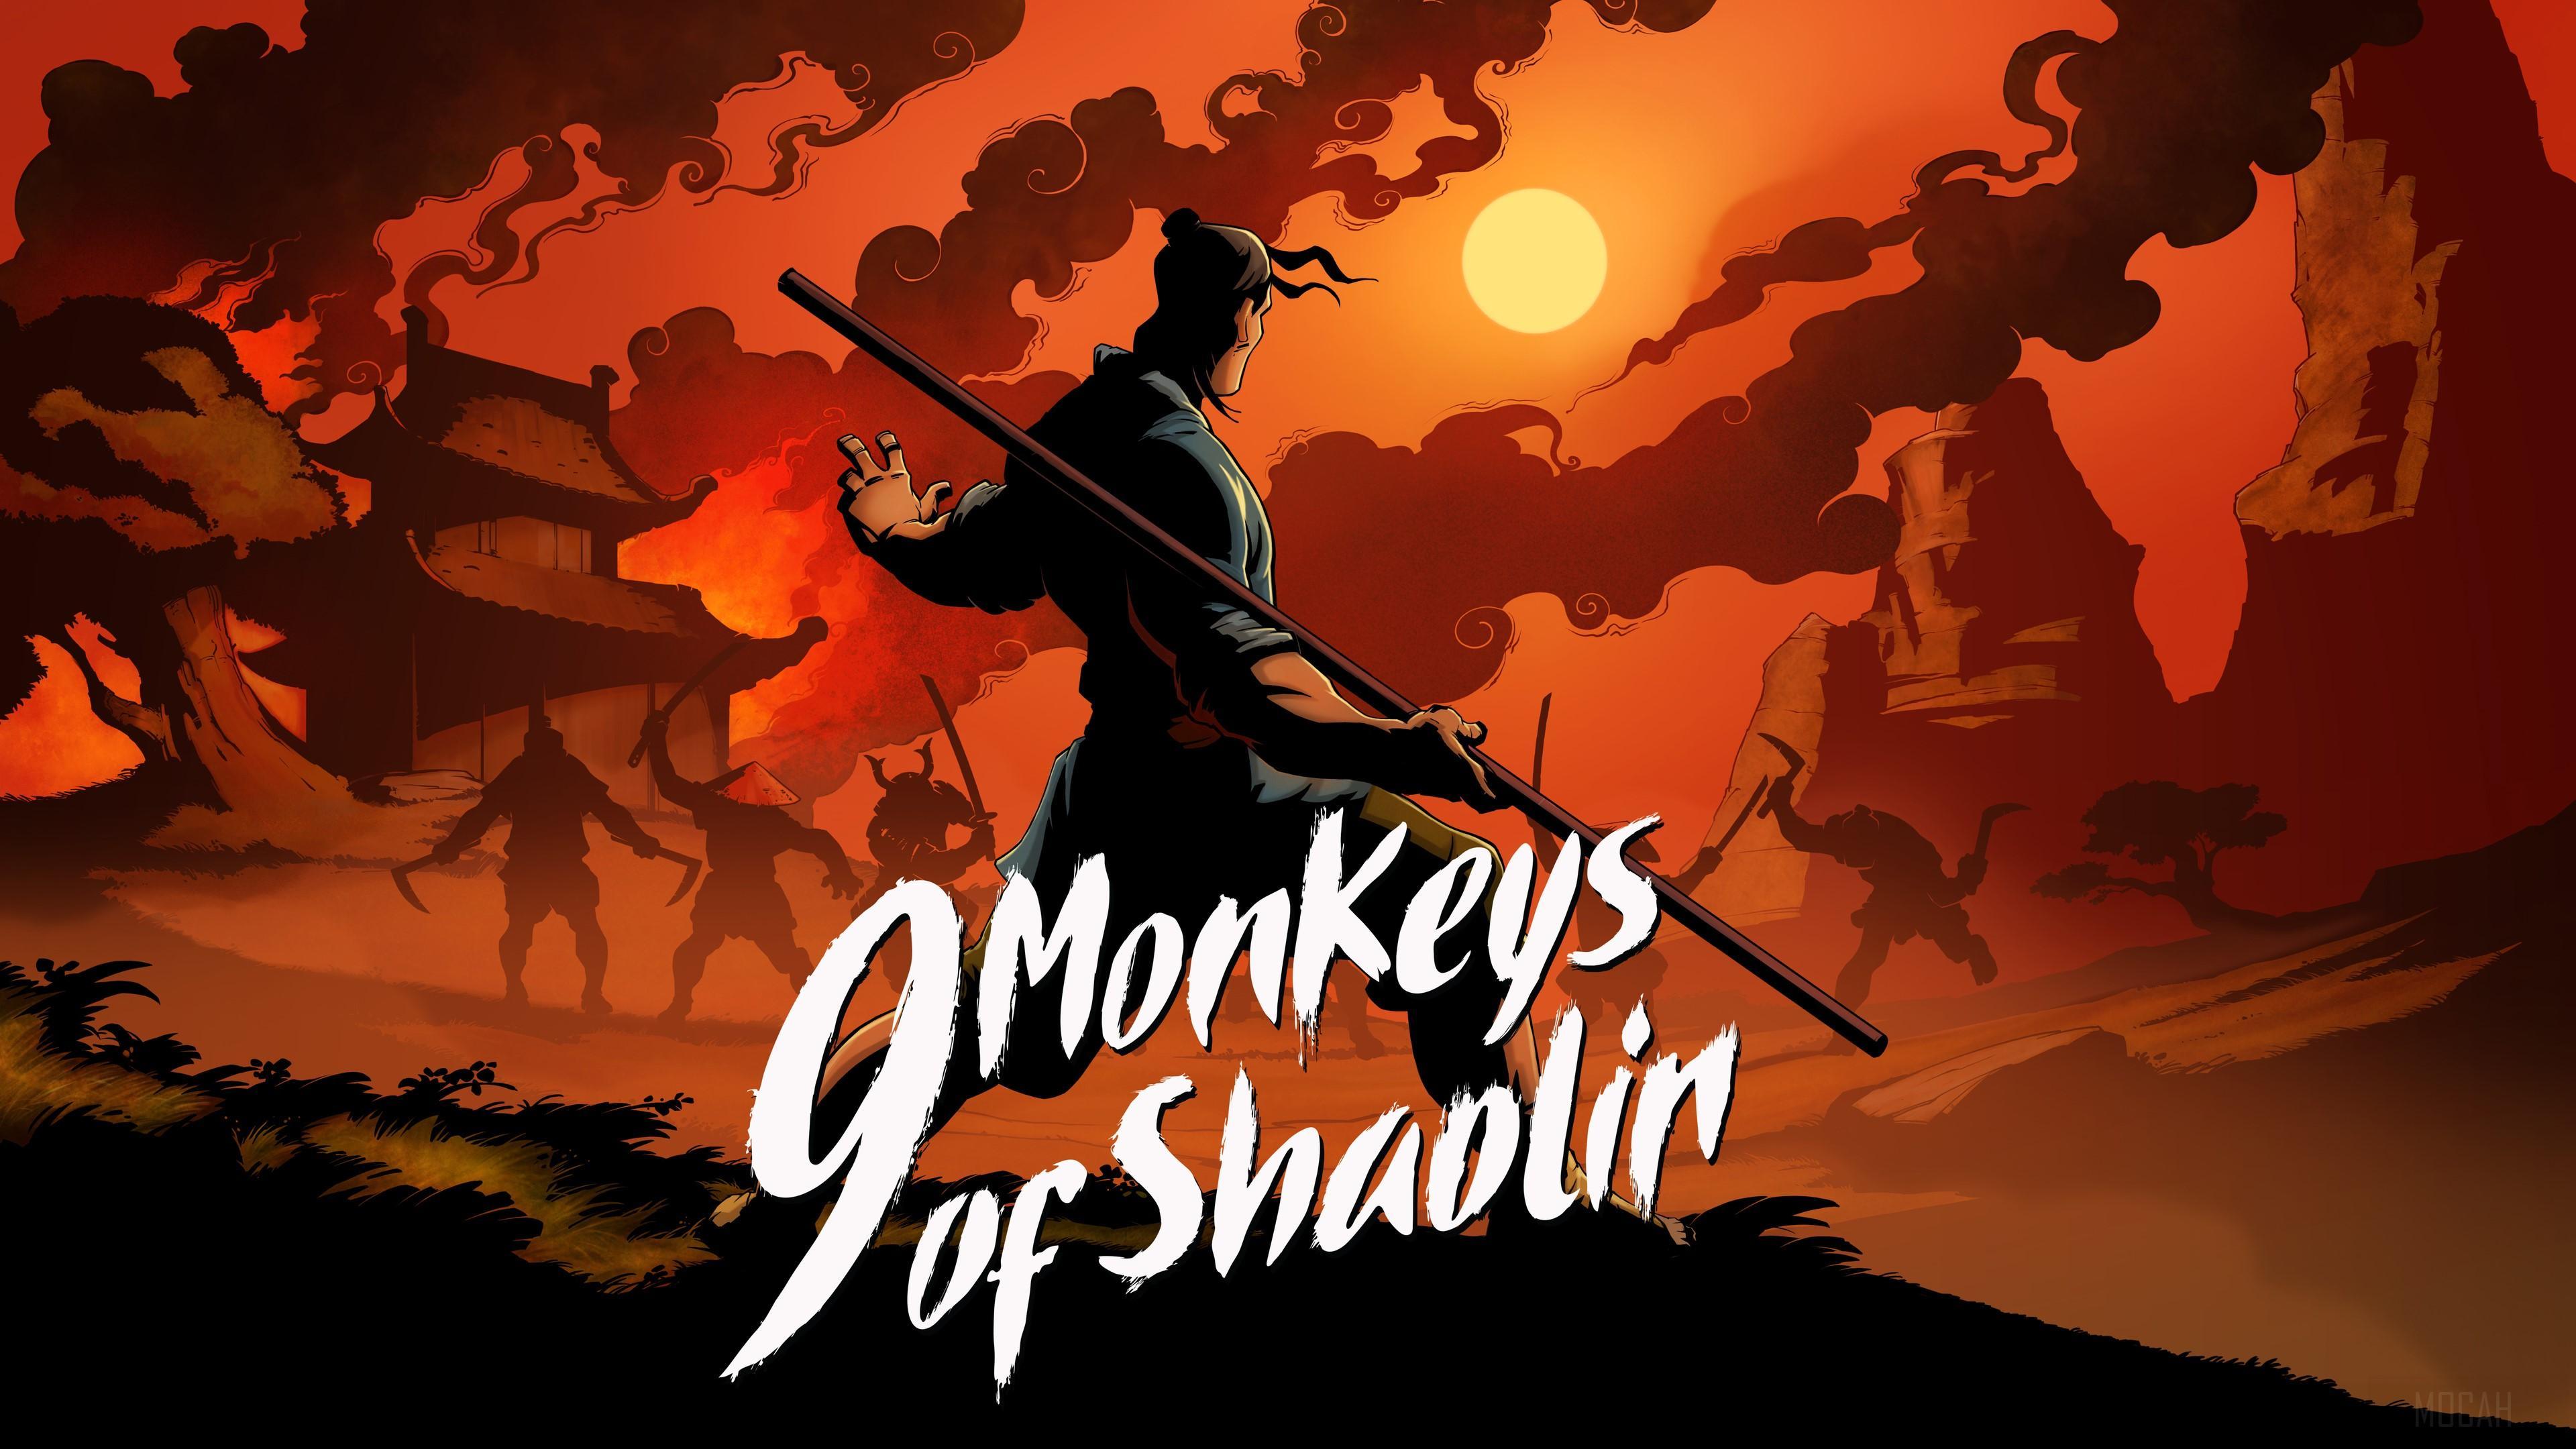 HD wallpaper, 9 Monkeys Of Shaolin 4K